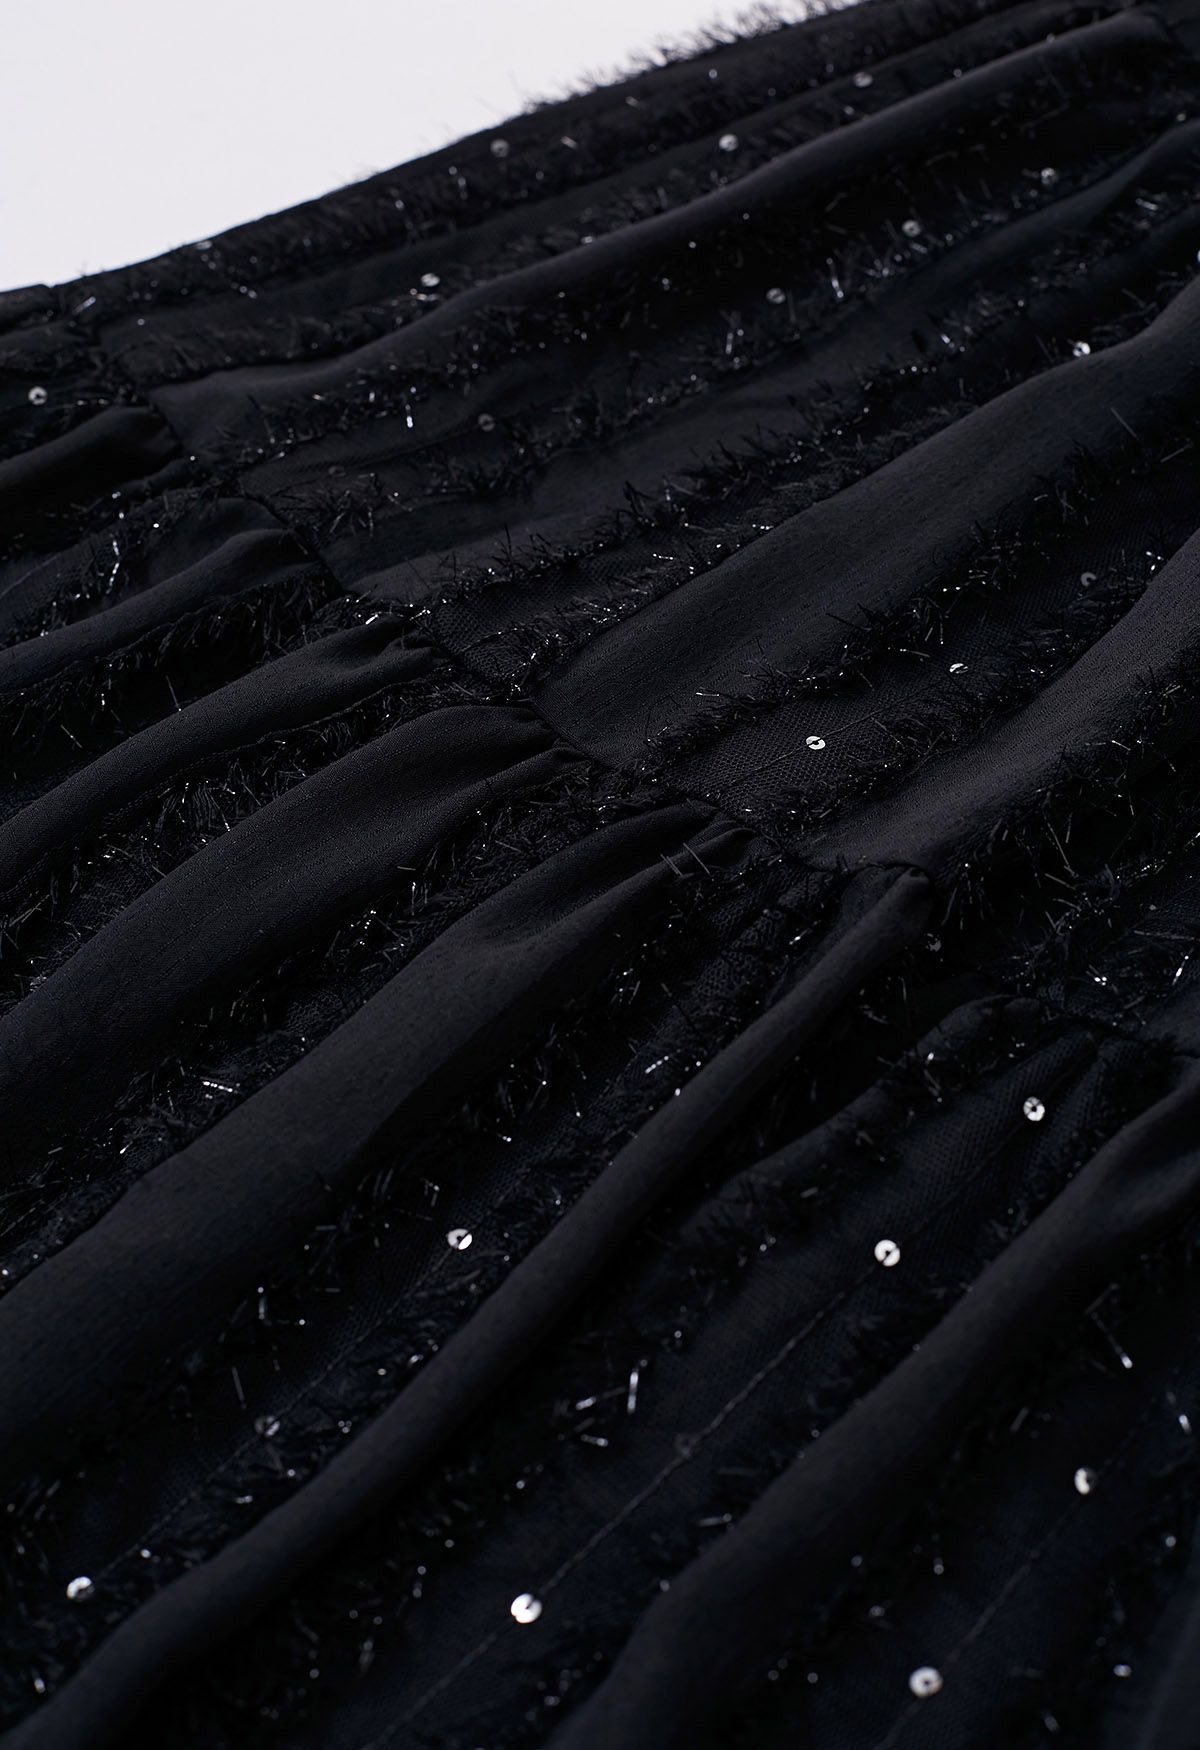 Falda midi de lentejuelas con flecos brillantes en negro